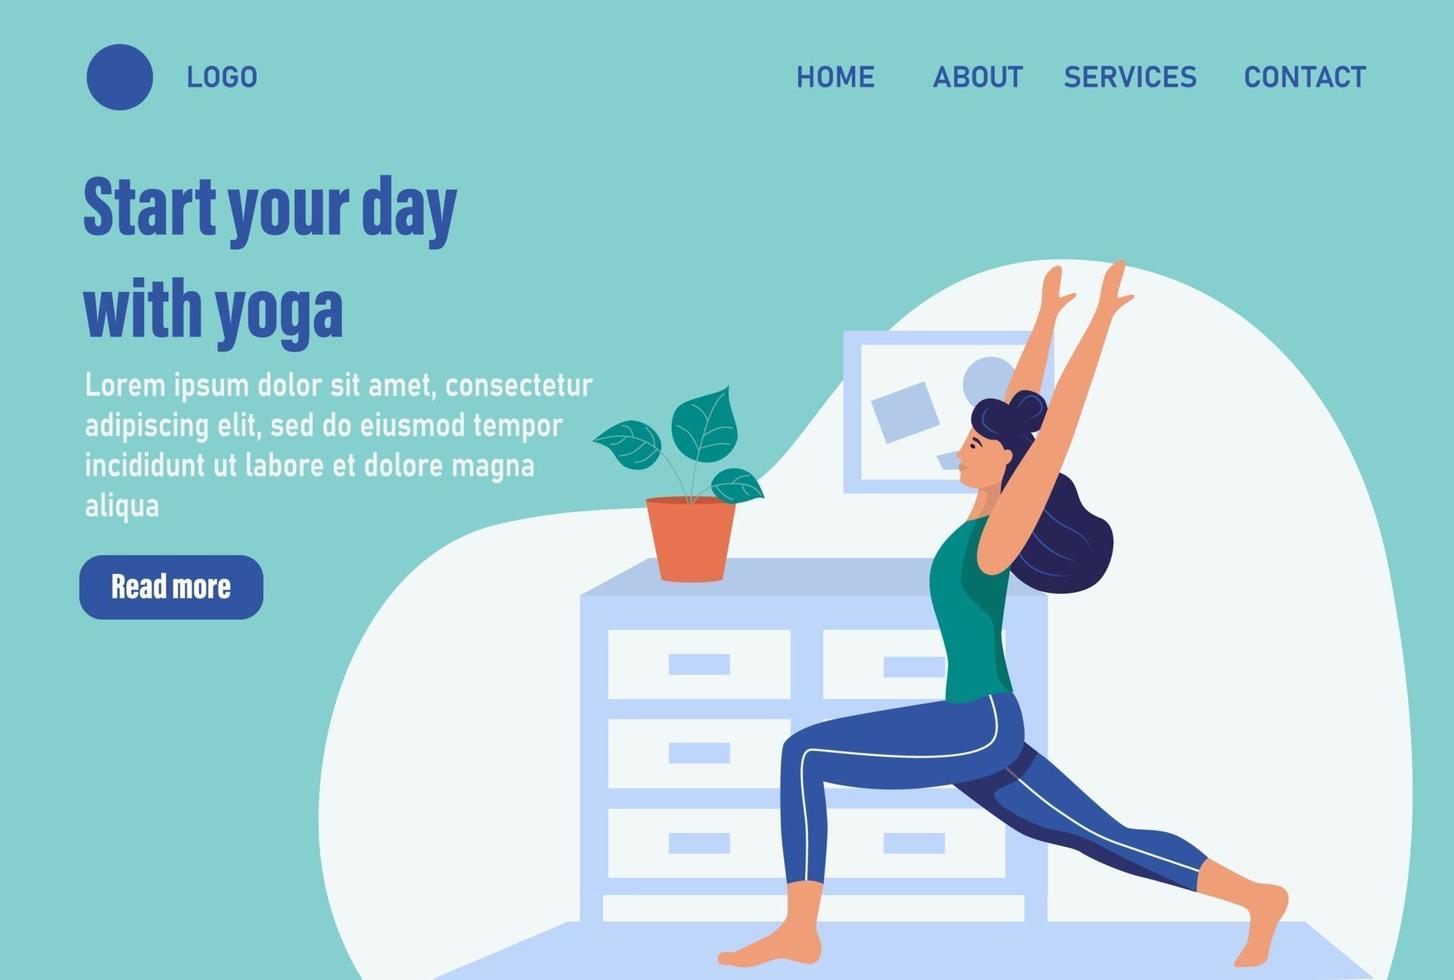 inizia la tua giornata con lo yoga. modello di pagina web di destinazione della home page del sito Web. giovane donna fa yoga a casa. il concetto di vita quotidiana, tempo libero quotidiano e attività lavorative. illustrazione vettoriale di cartone animato piatto.